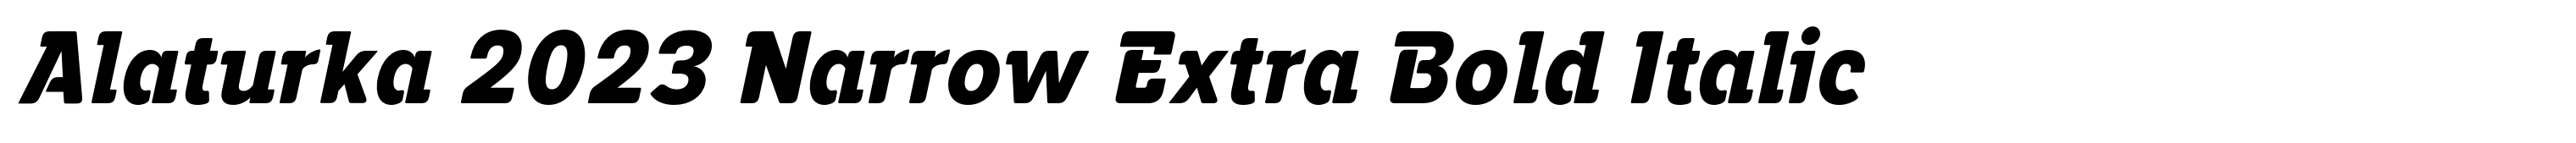 Alaturka 2023 Narrow Extra Bold Italic